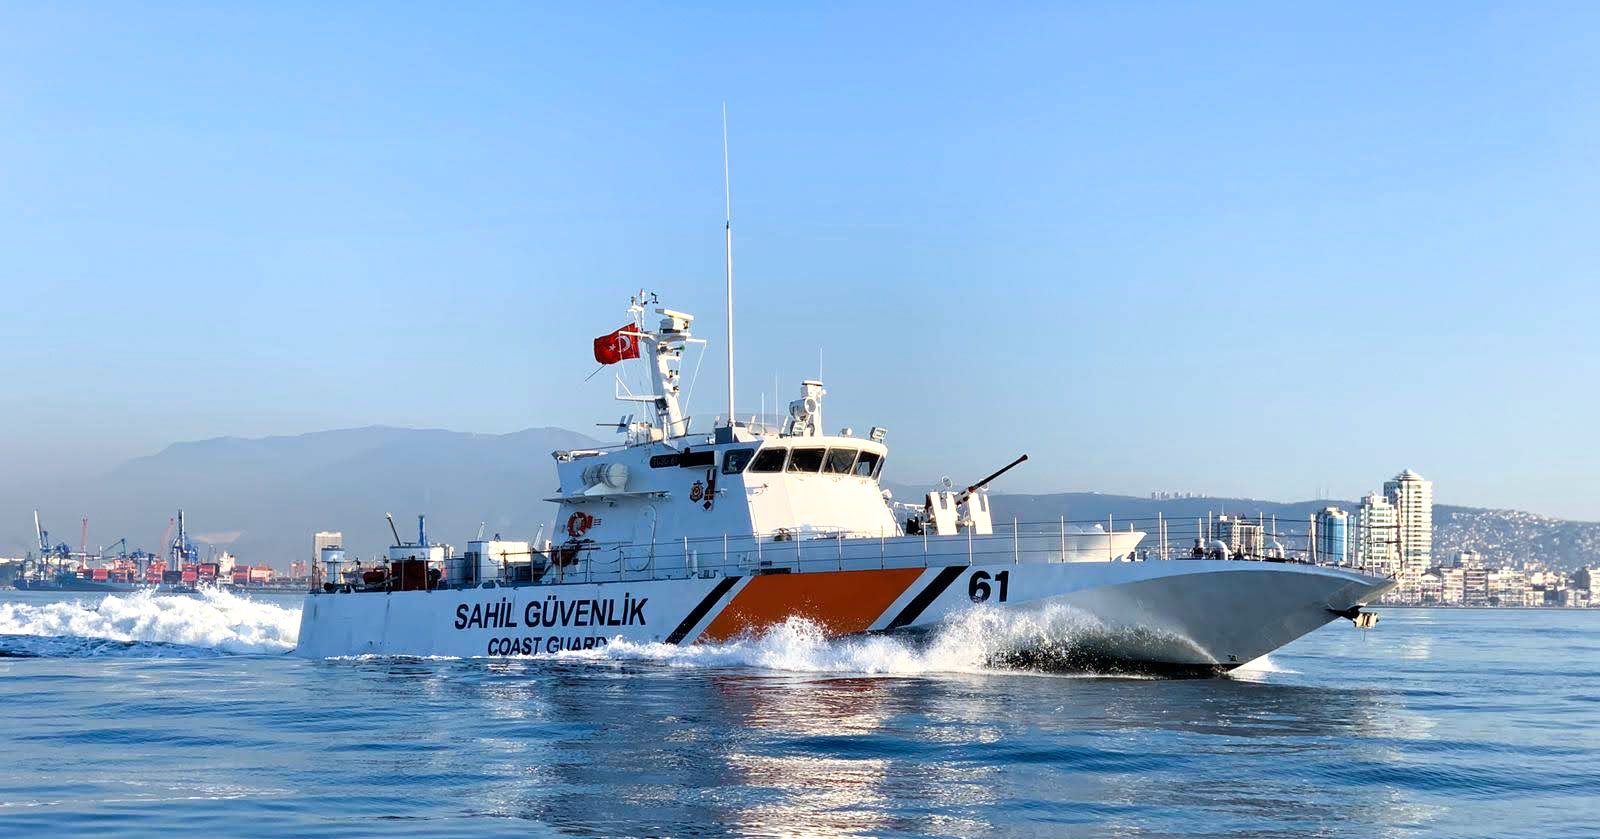 T.C. Sahil Güvenlik Komutanlığı on Twitter: "Deniz ve limanlarda  görevlerimiz aralıksız devam ediyor. #sahilgüvenlik  https://t.co/DUppPNWvP0" / Twitter